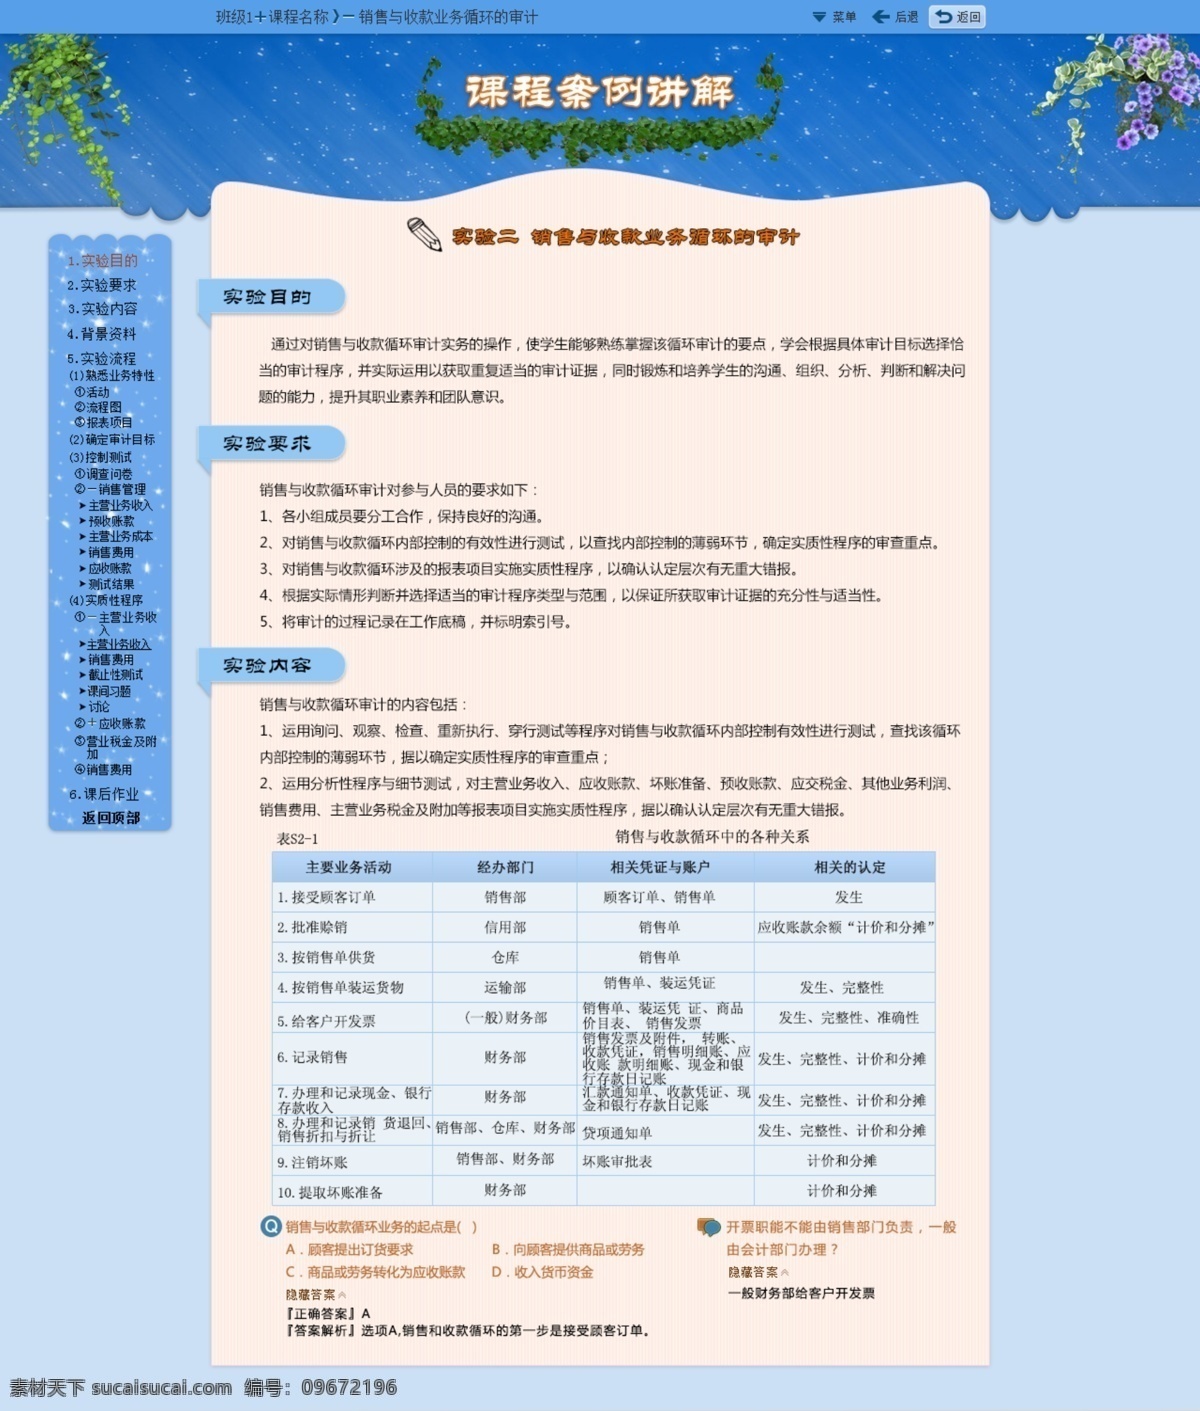 网页 课程 案例 讲解 案例讲解 深蓝色 绿萝 web 界面设计 中文模板 白色